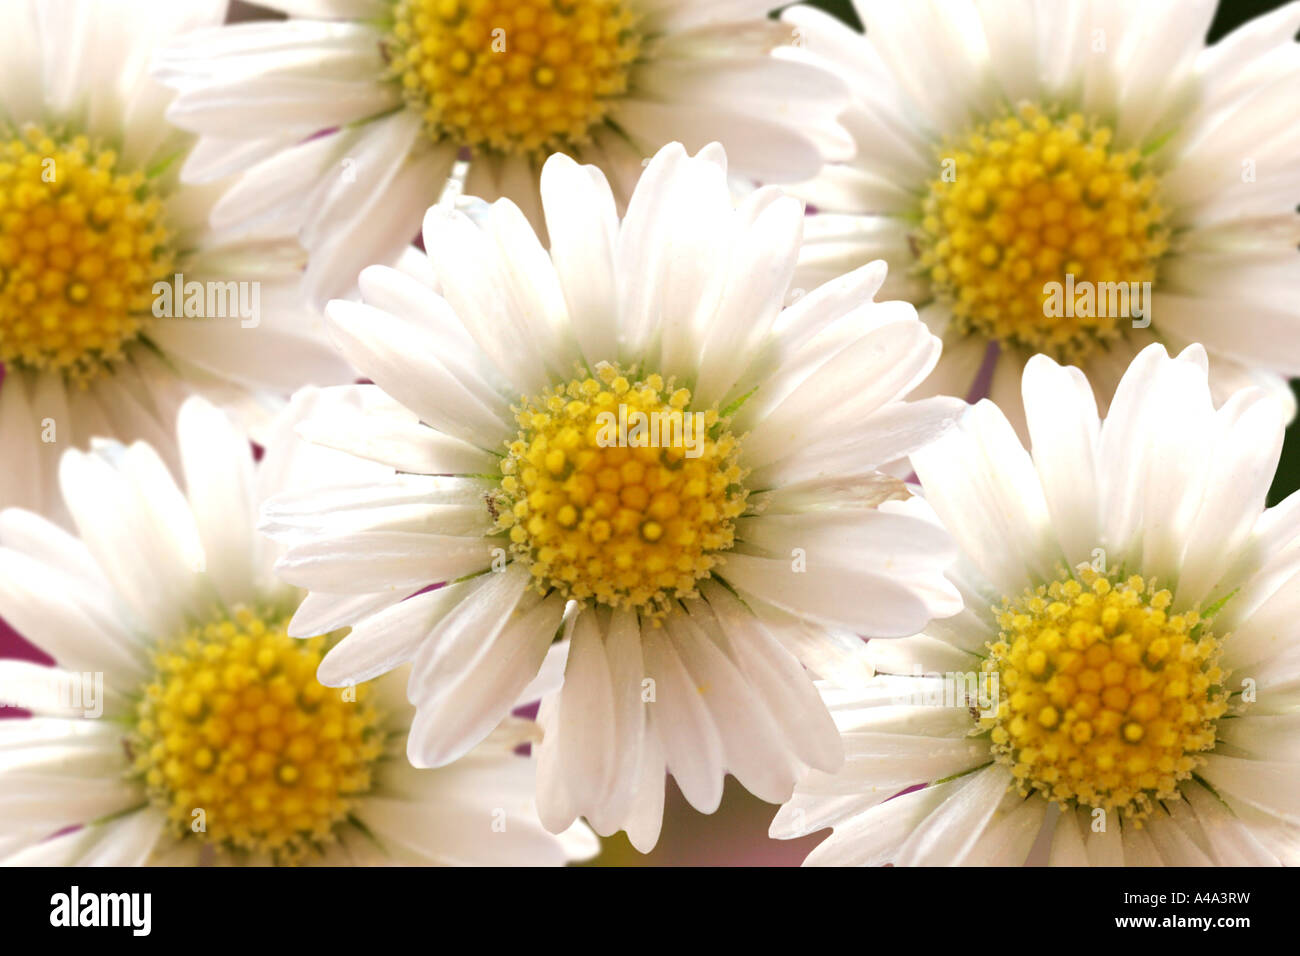 common daisy, lawn daisy, English daisy (Bellis perennis), inflorescences, Germany Stock Photo